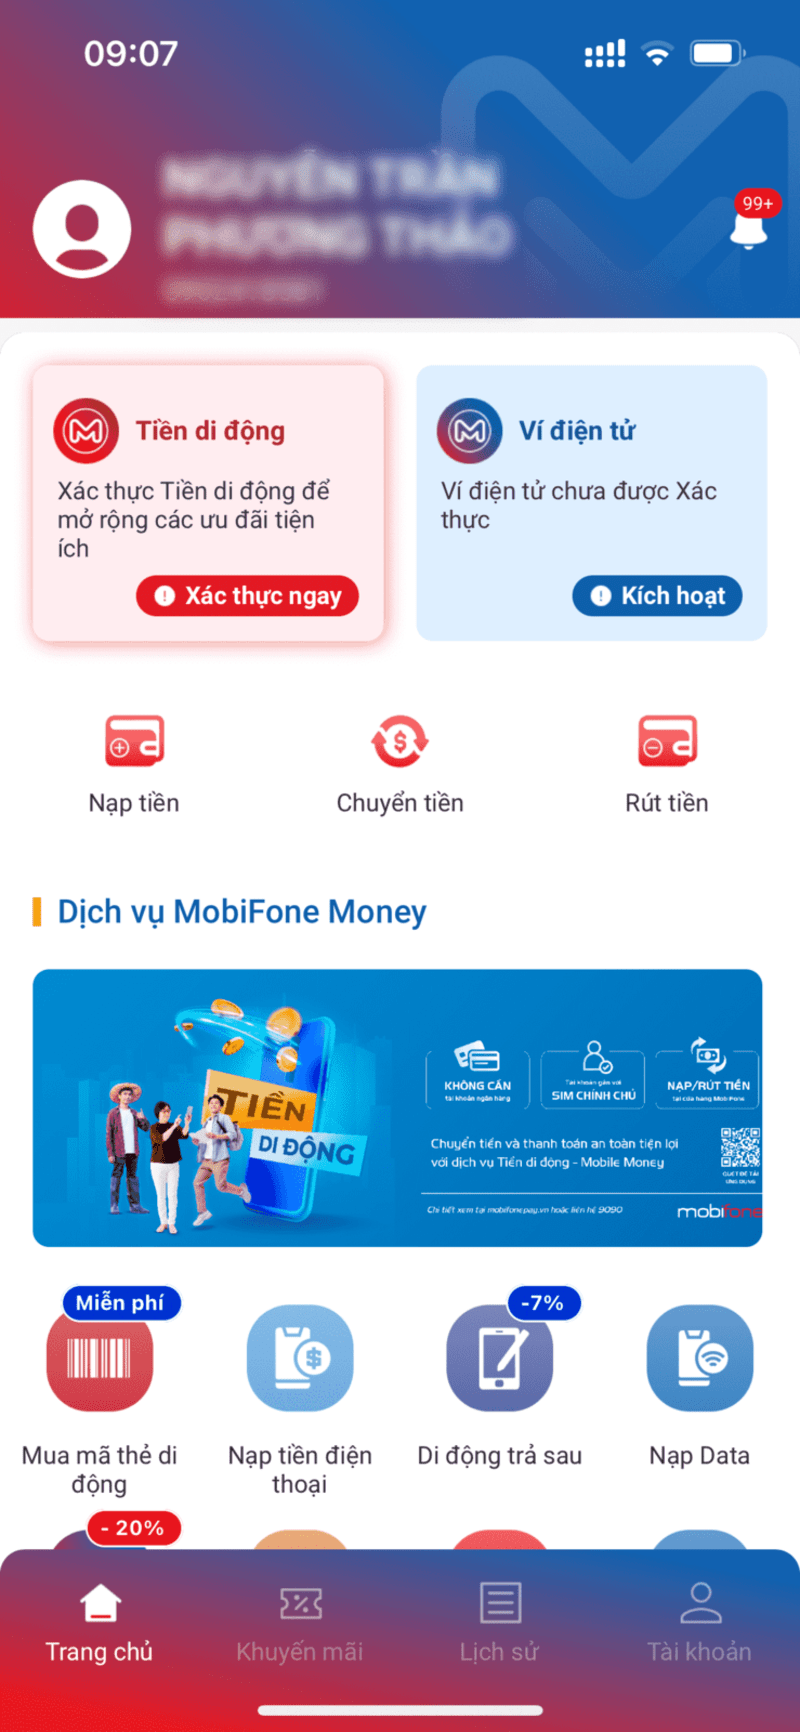 đăng ký dịch vụ tiền di động MobiFone